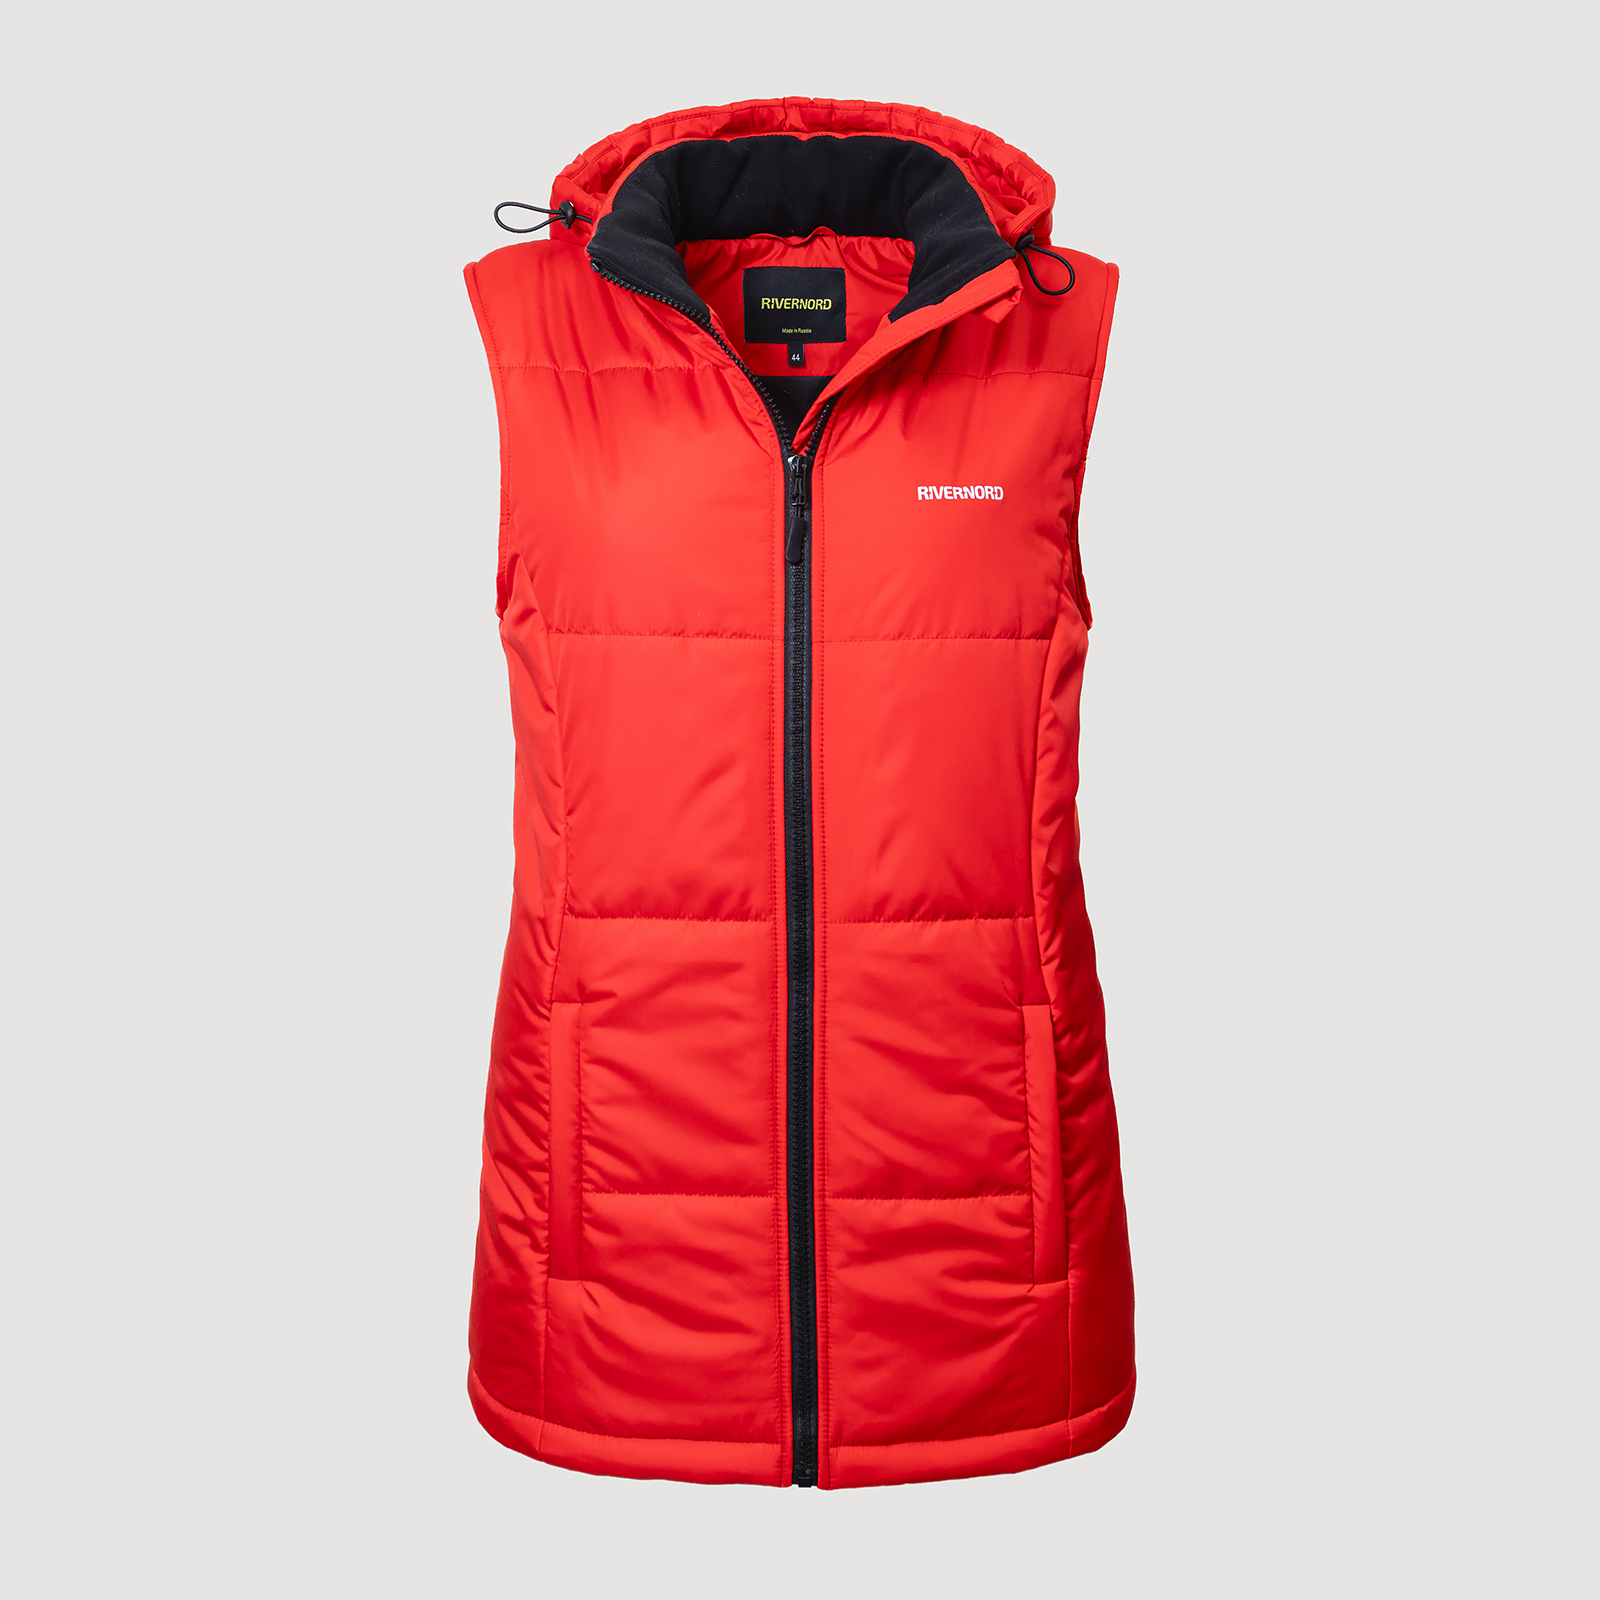 Женский утепленный жилет Elegance Winter Vest Original цвет красный